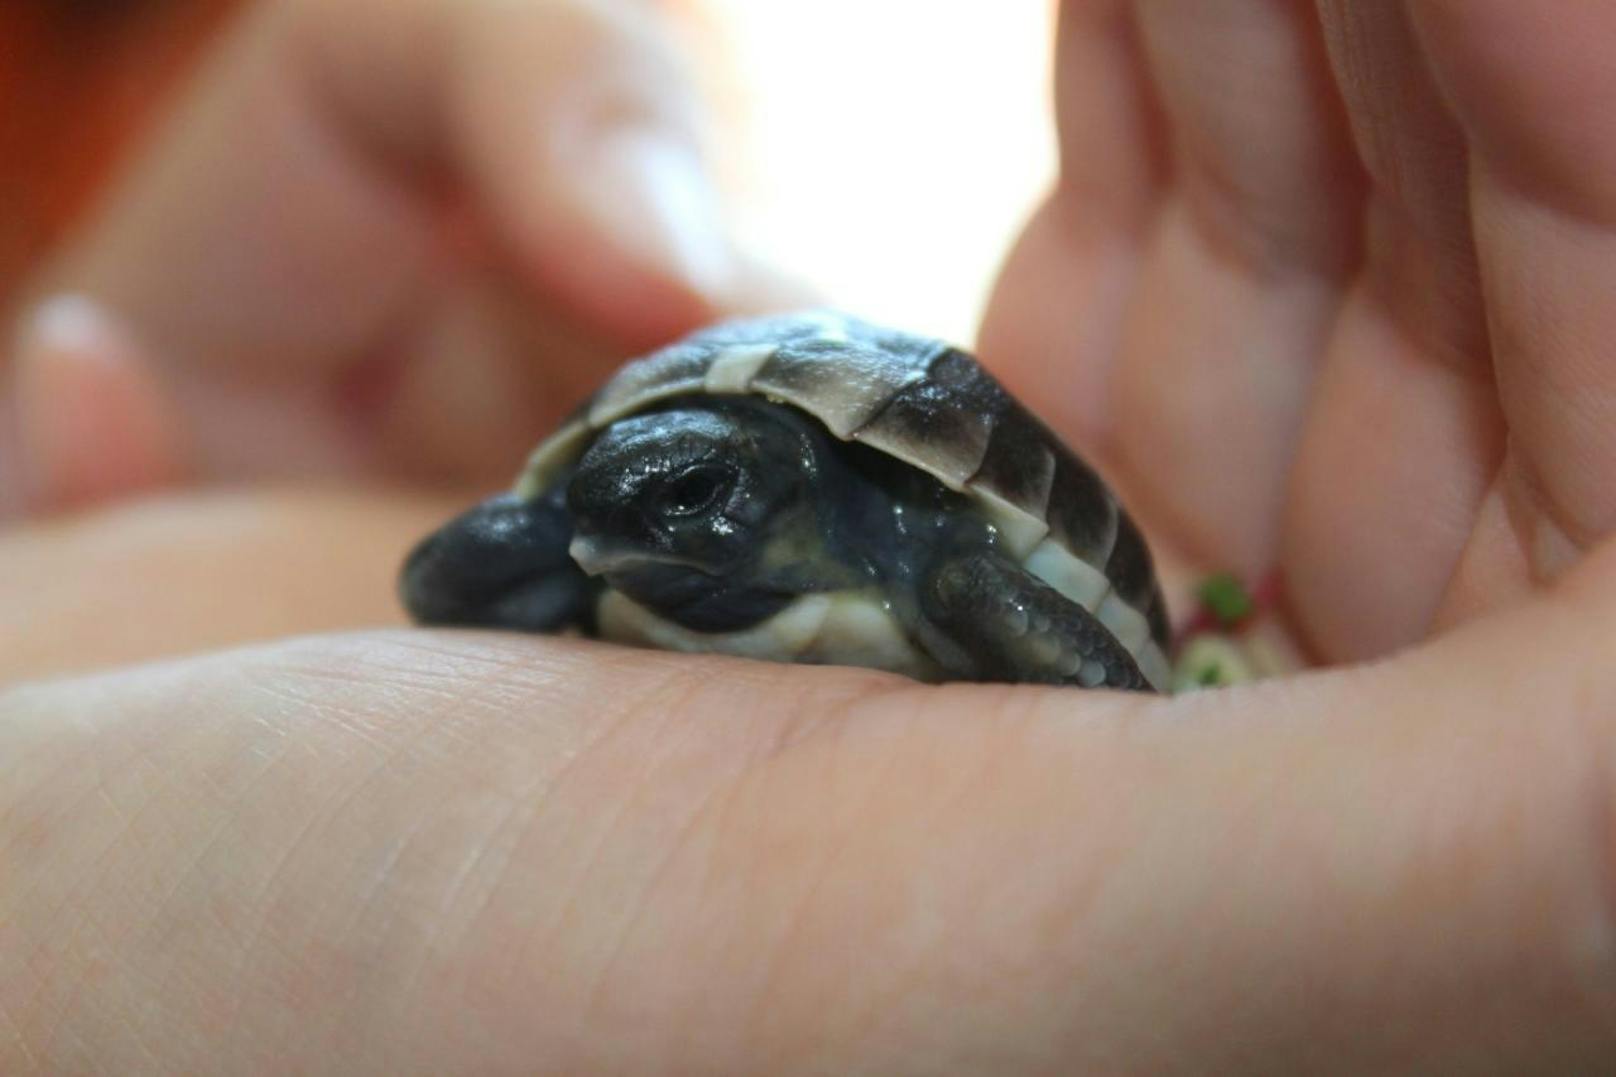 Dieses frisch geschlüpfte Schildkröten-Baby ist gerade mal so klein wie eine Zwei-Euro-Münze. Wo das Reptil herkommt, wird wohl ein Rätsel bleiben...